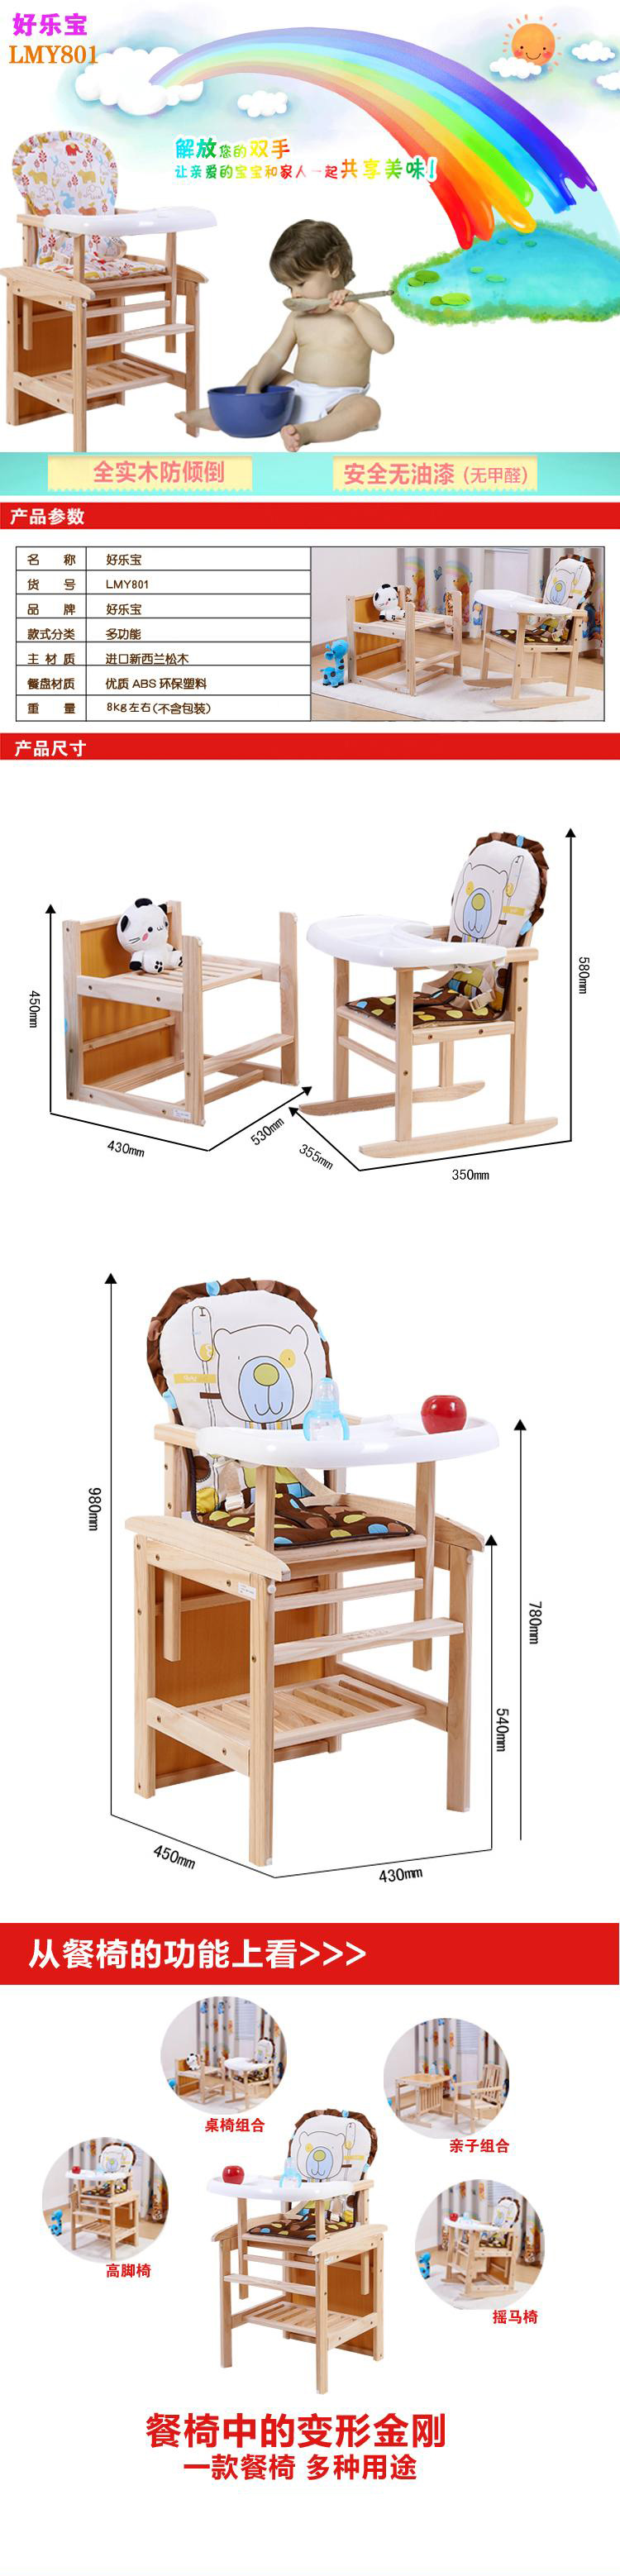 好乐宝多功能高低二档全实木餐椅LMY801